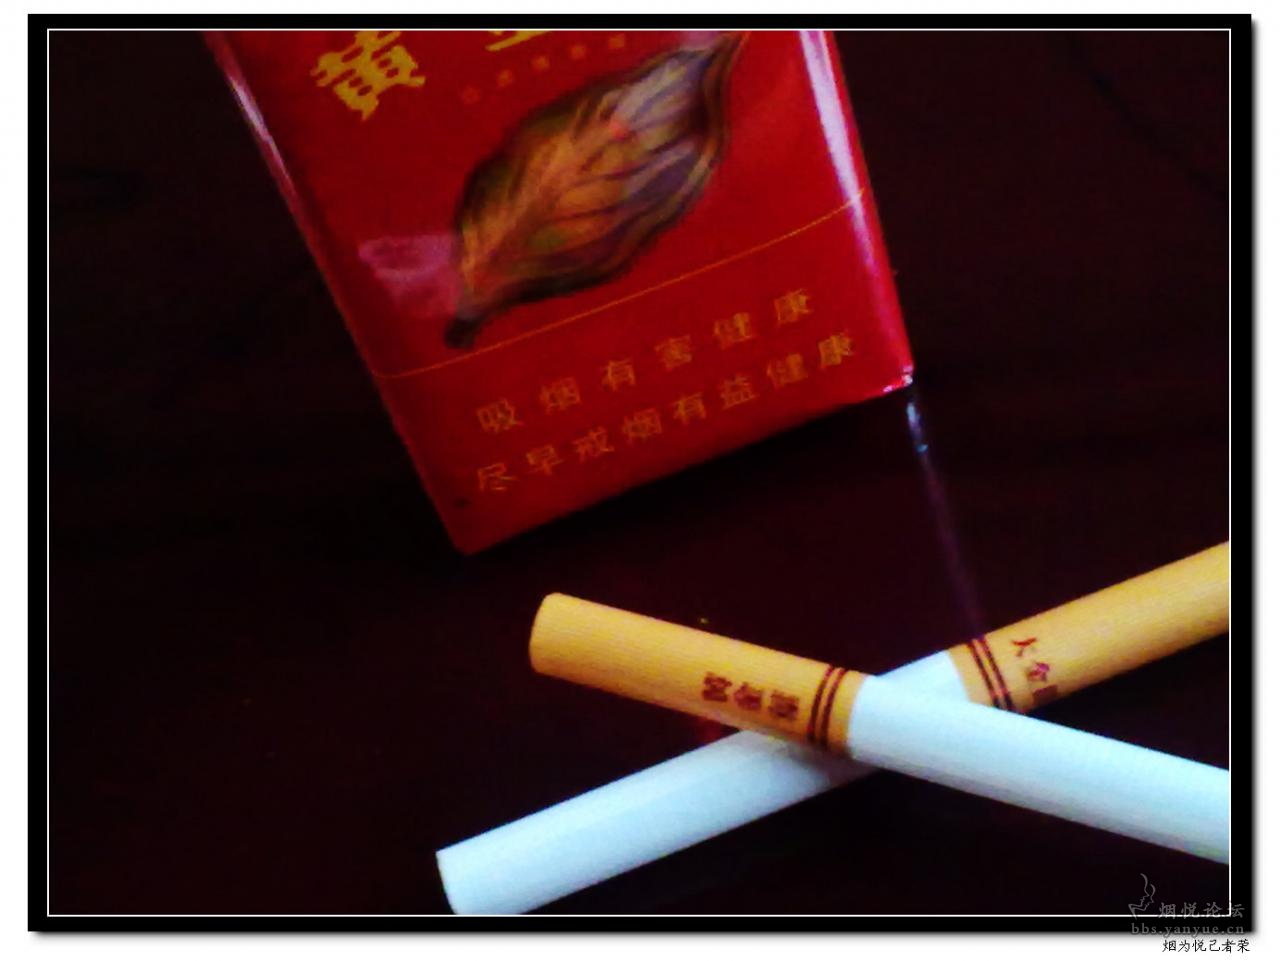 黄金叶（金尚酷） - 香烟漫谈 - 烟悦网论坛